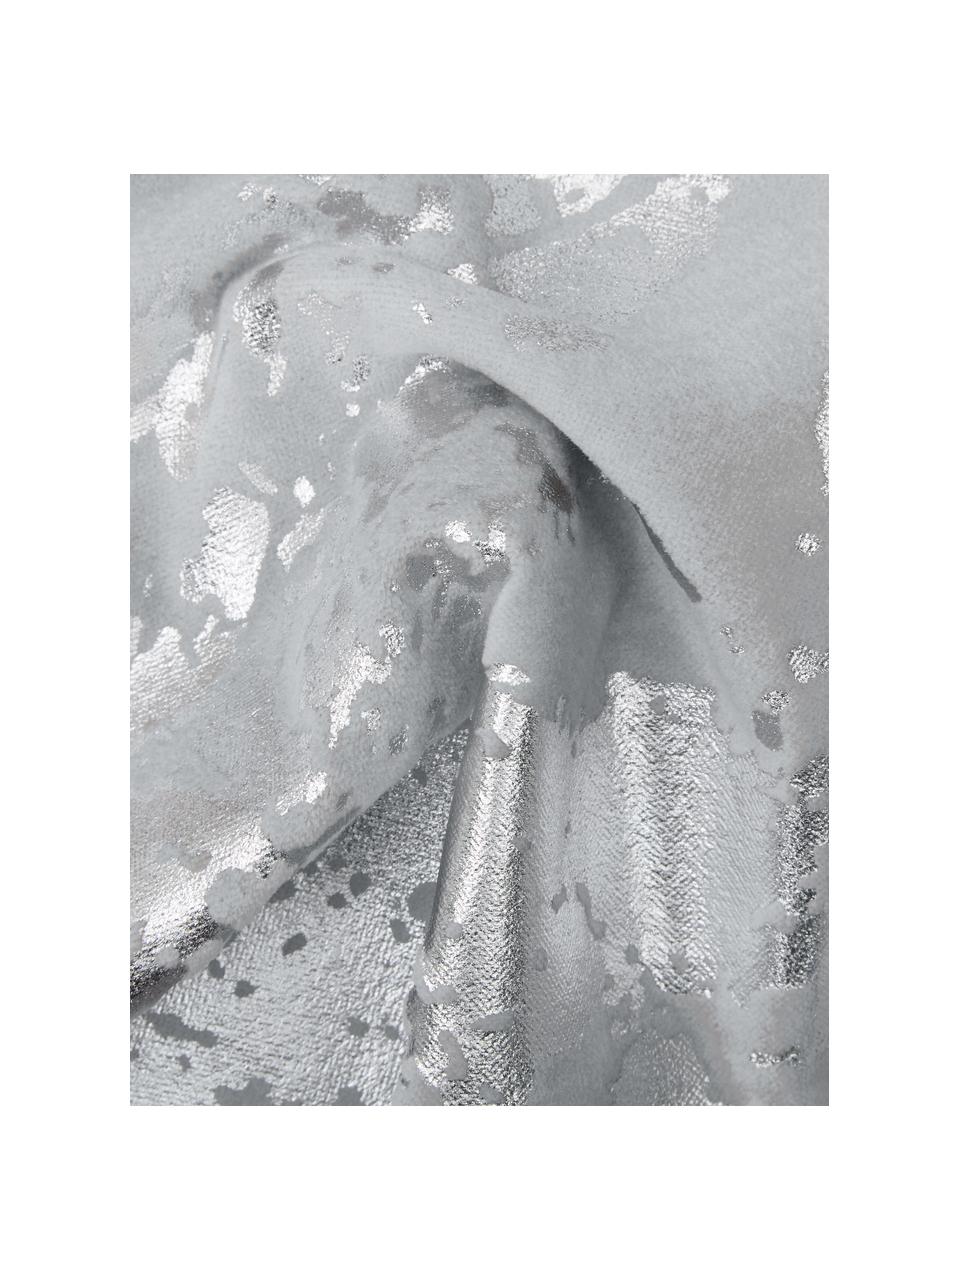 Samt-Kissenhülle Shiny mit schimmerndem Vintage Muster, 100% Baumwollsamt, Hellgrau, Silberfarben, 40 x 40 cm